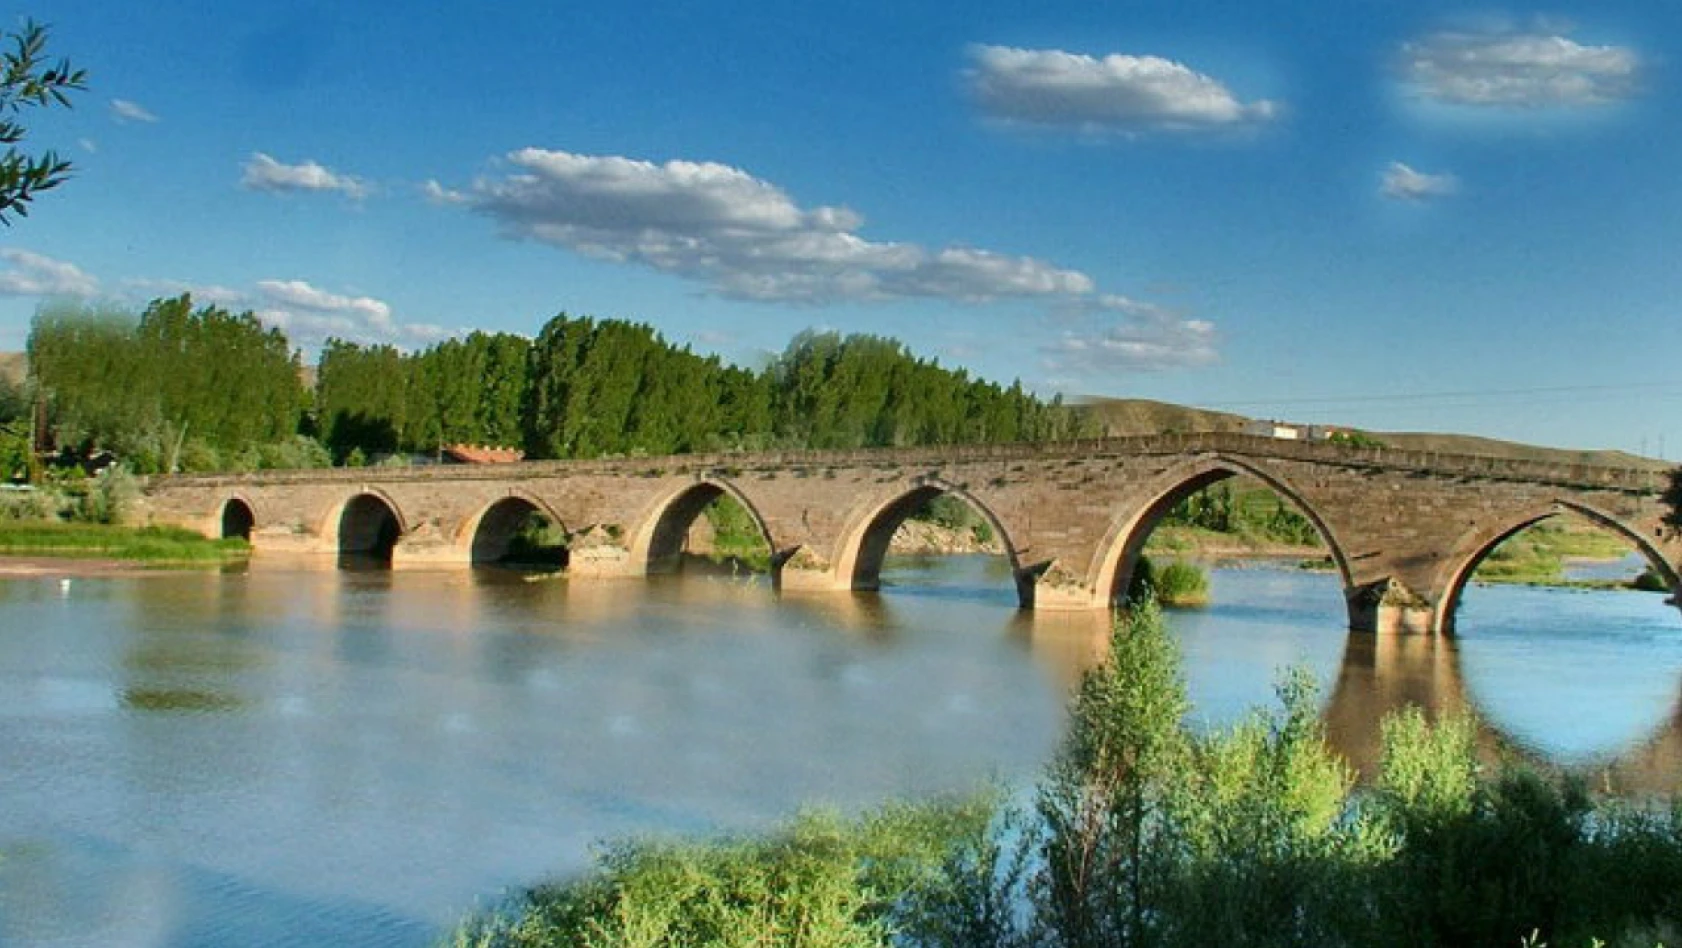 Hem tarihi hem de şifalı Şahruh Köprüsü – Kayseri'de gezilecek yerler